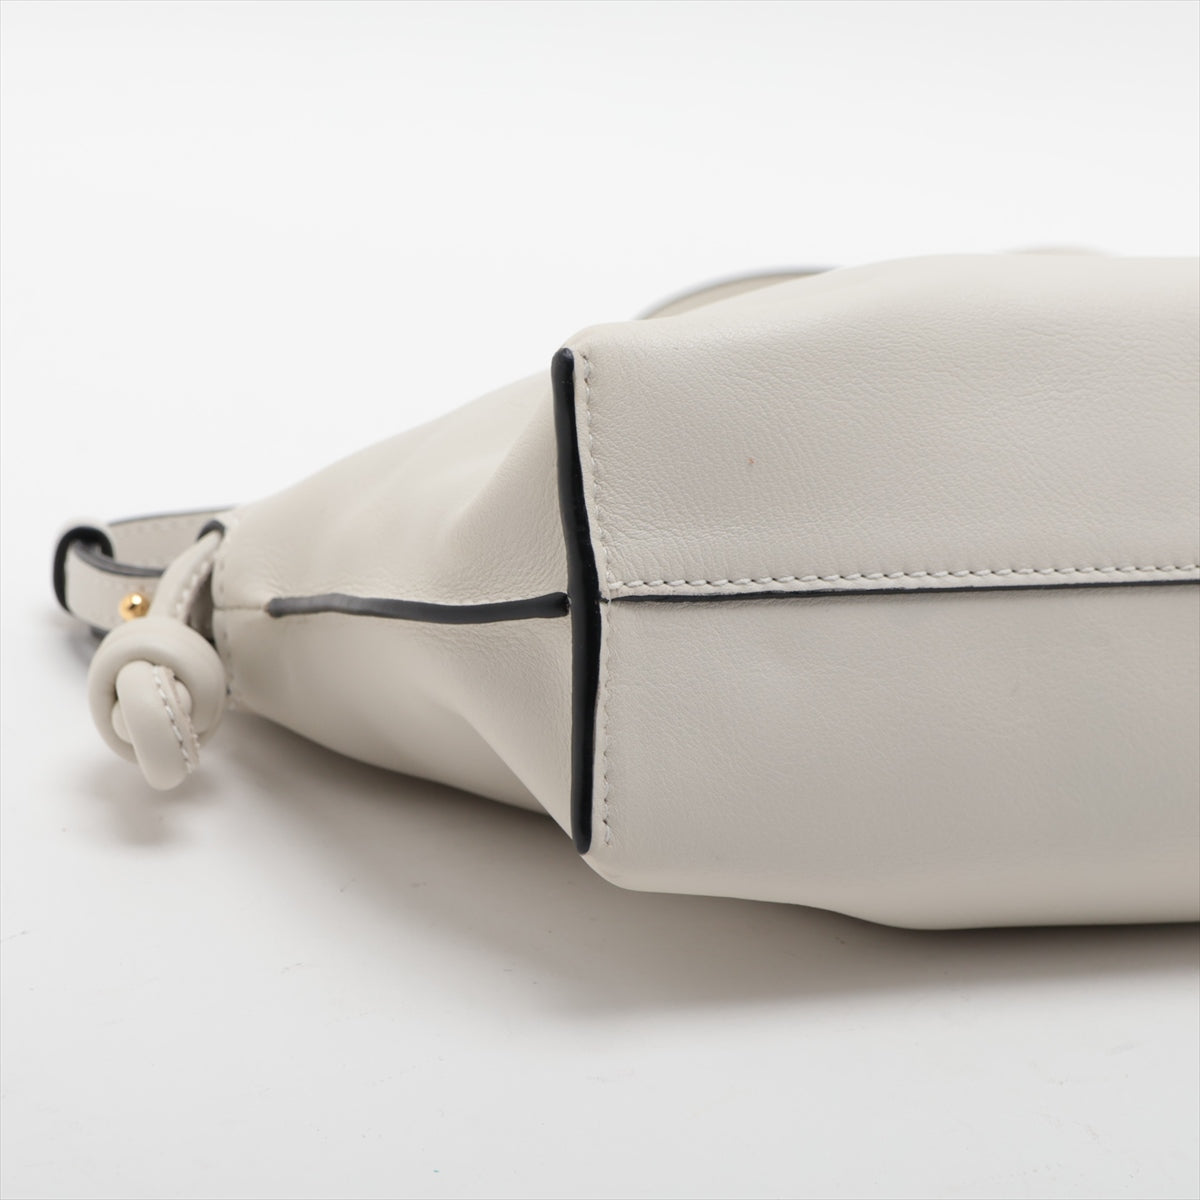 Loewe Flamenco Clutch Mini Leather Shoulder Bag Ivory